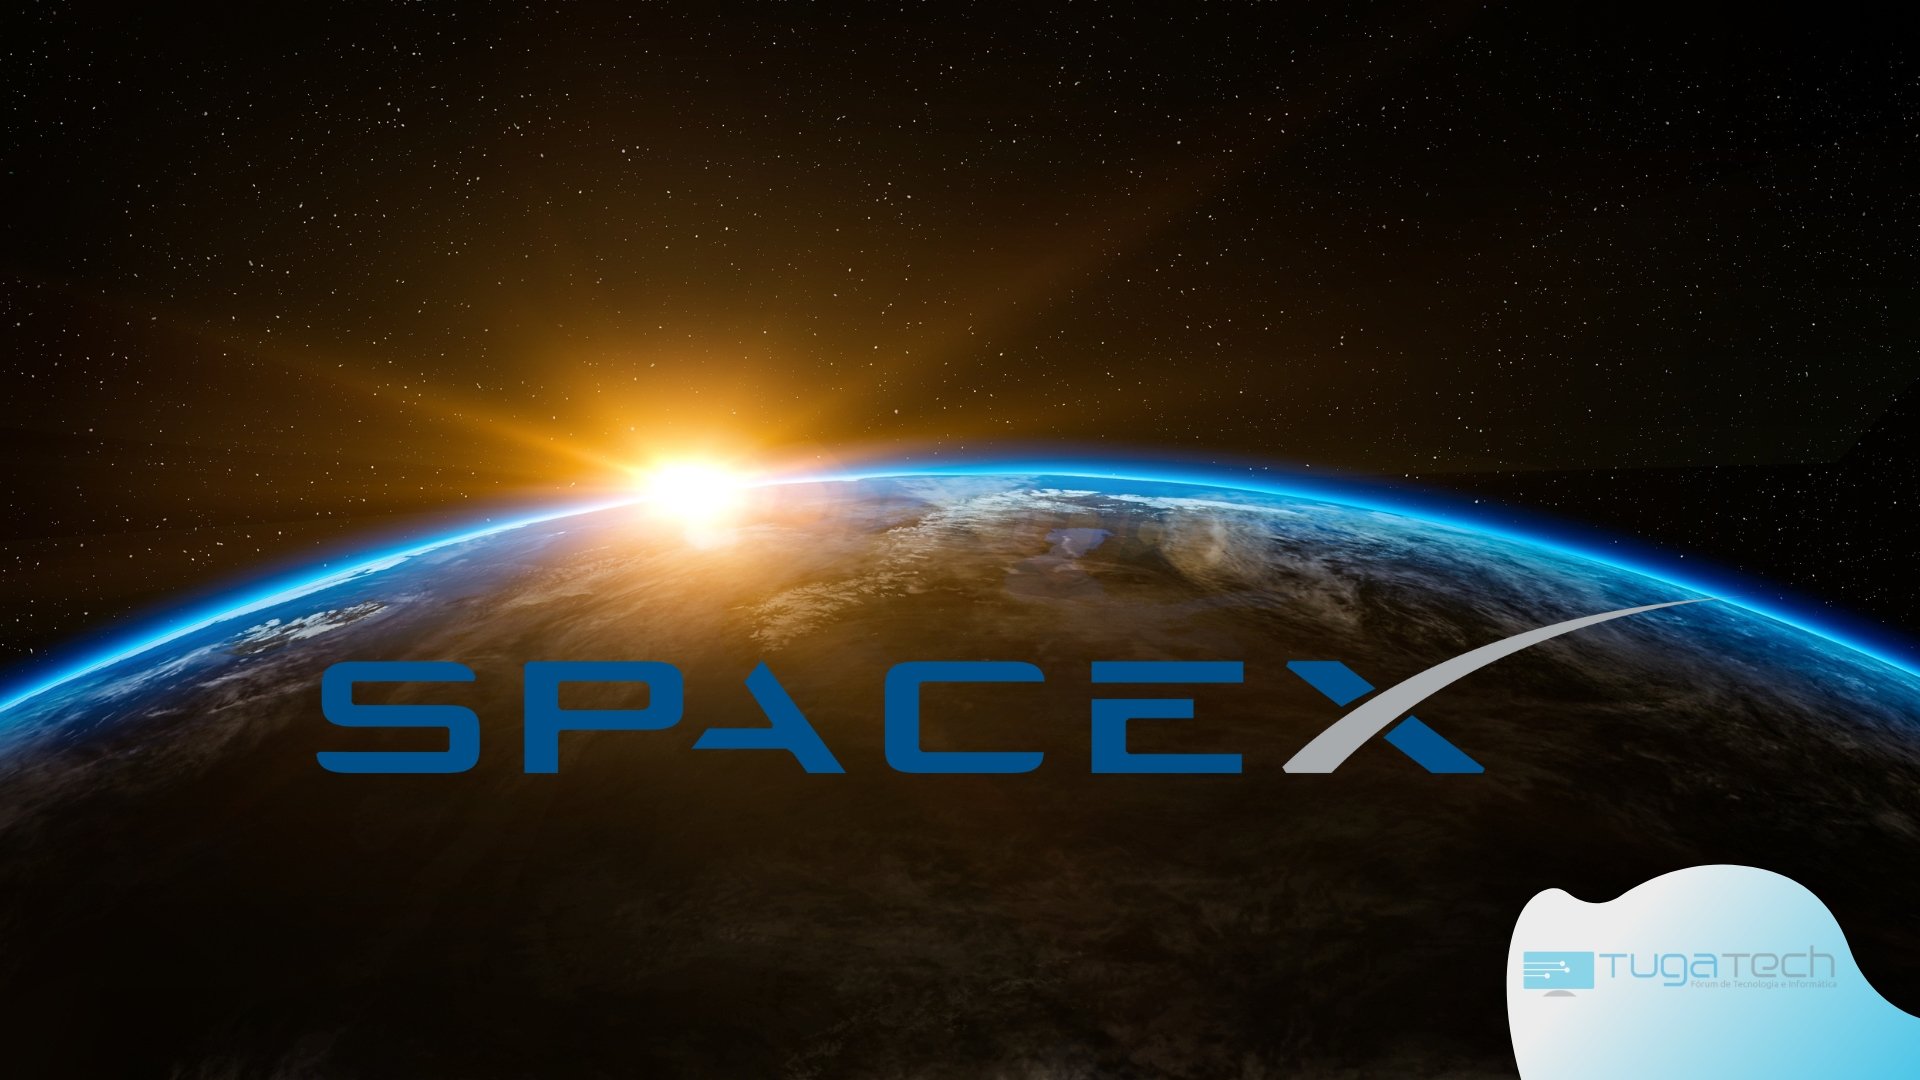 SpaceX com fundo do mundo